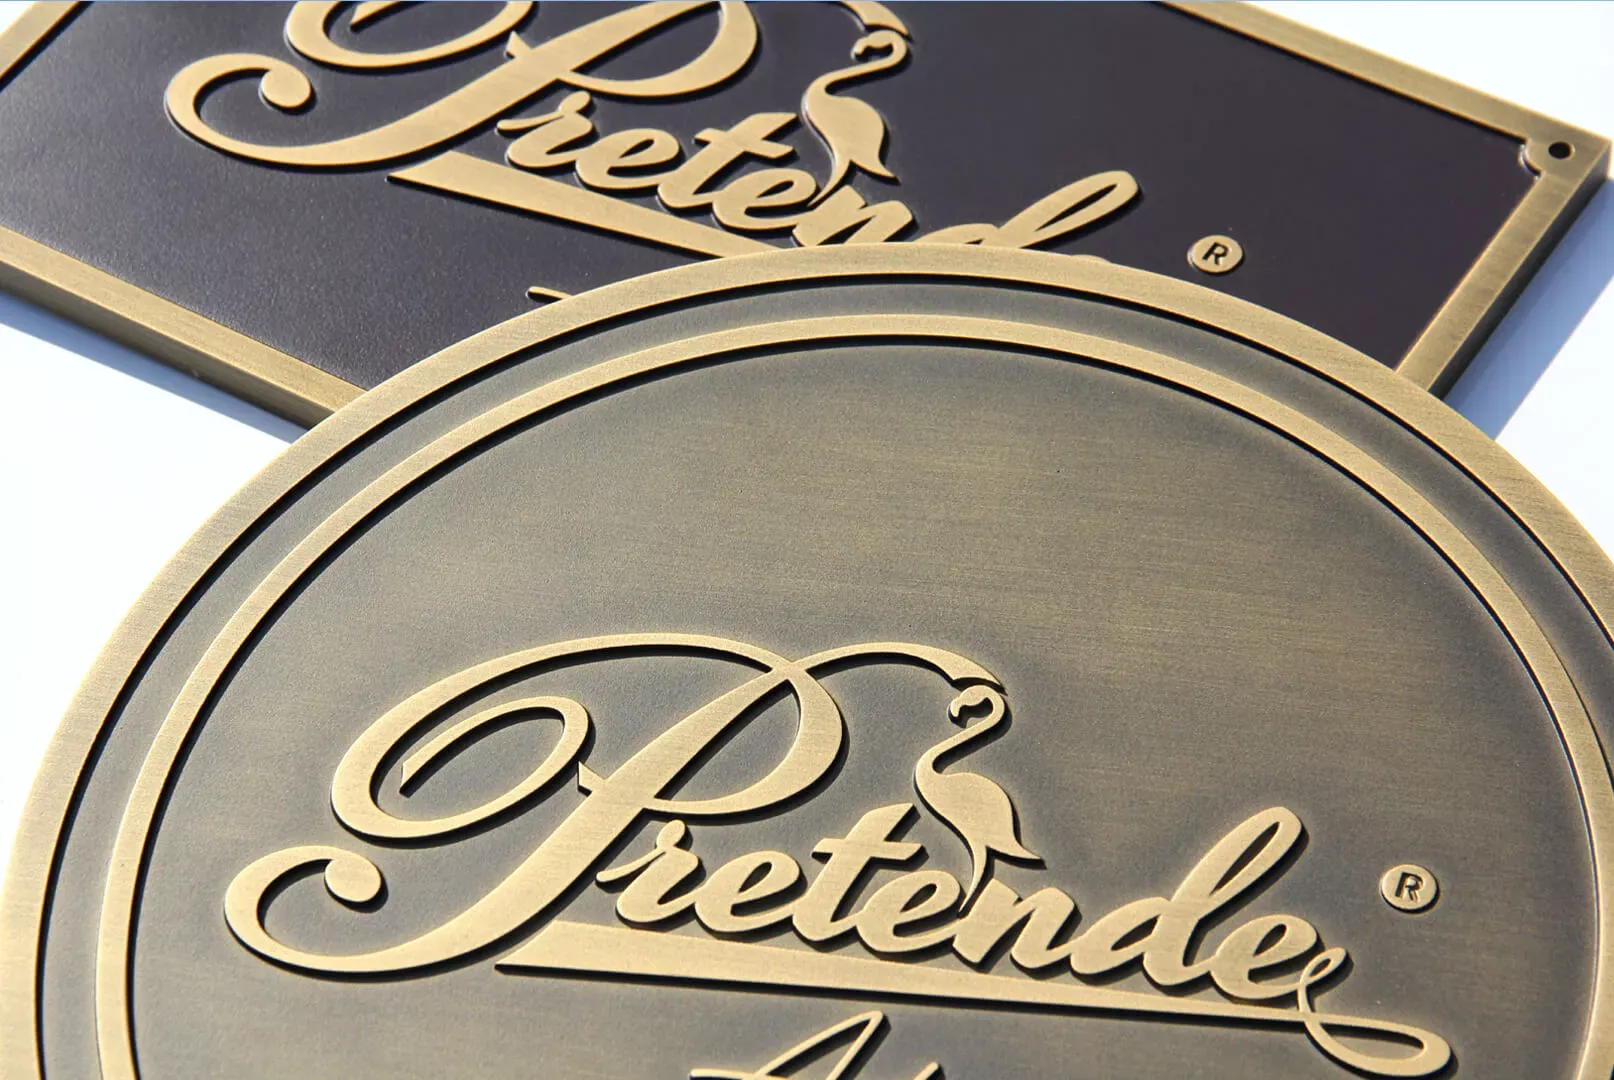 Gussplakette Pretende - 3D-Plakette aus Bronzeguss mit Pretende-Logo